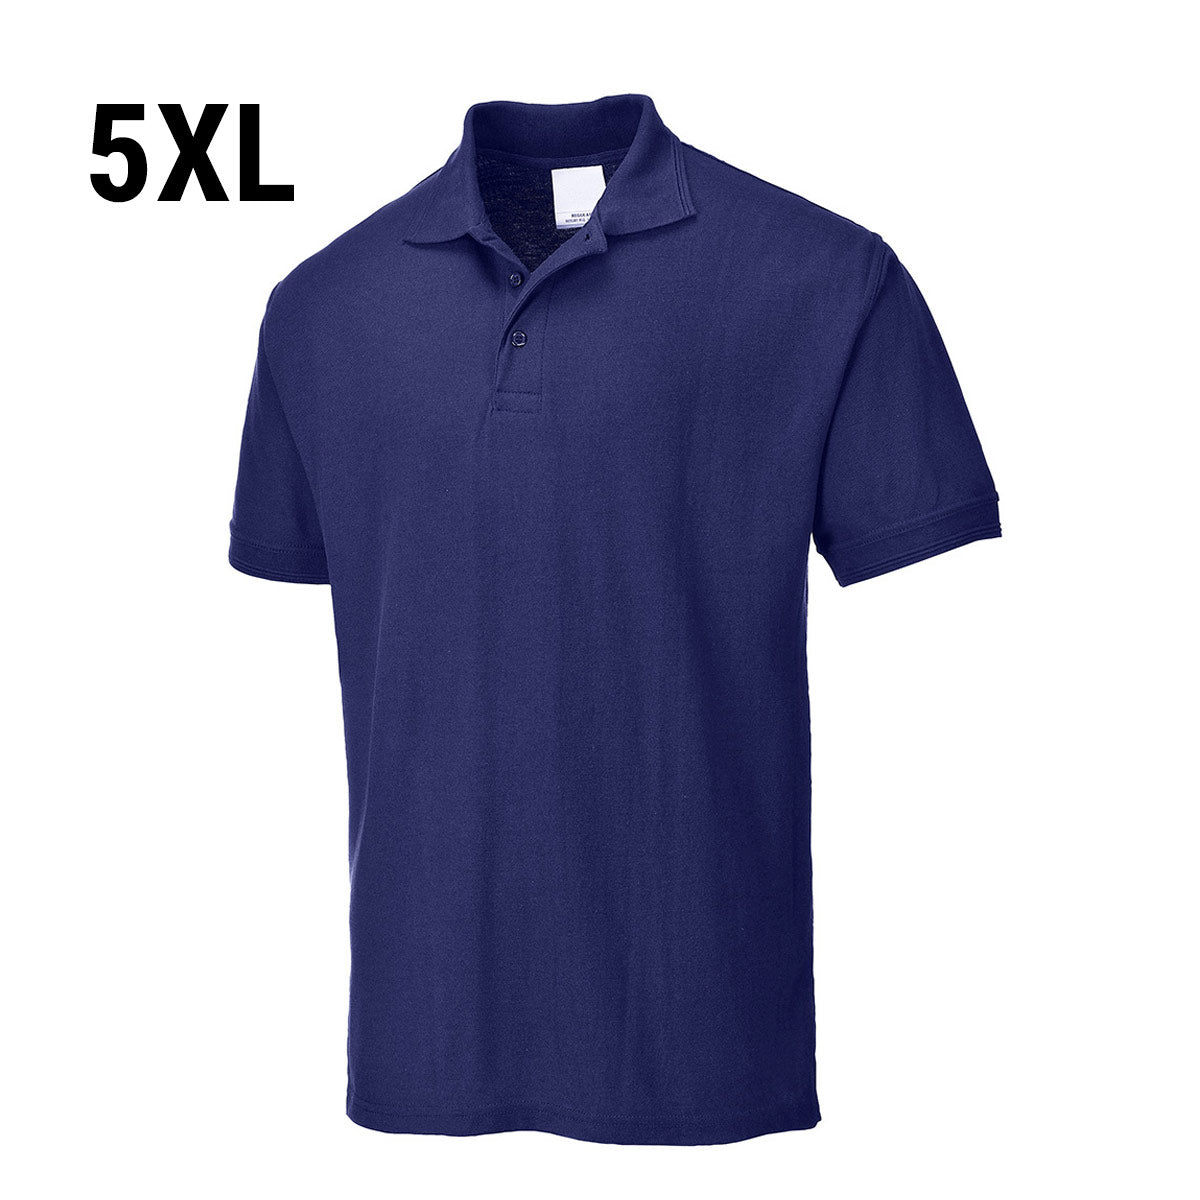 Polo shirt til mænd - Navy - Størrelse: 5XL